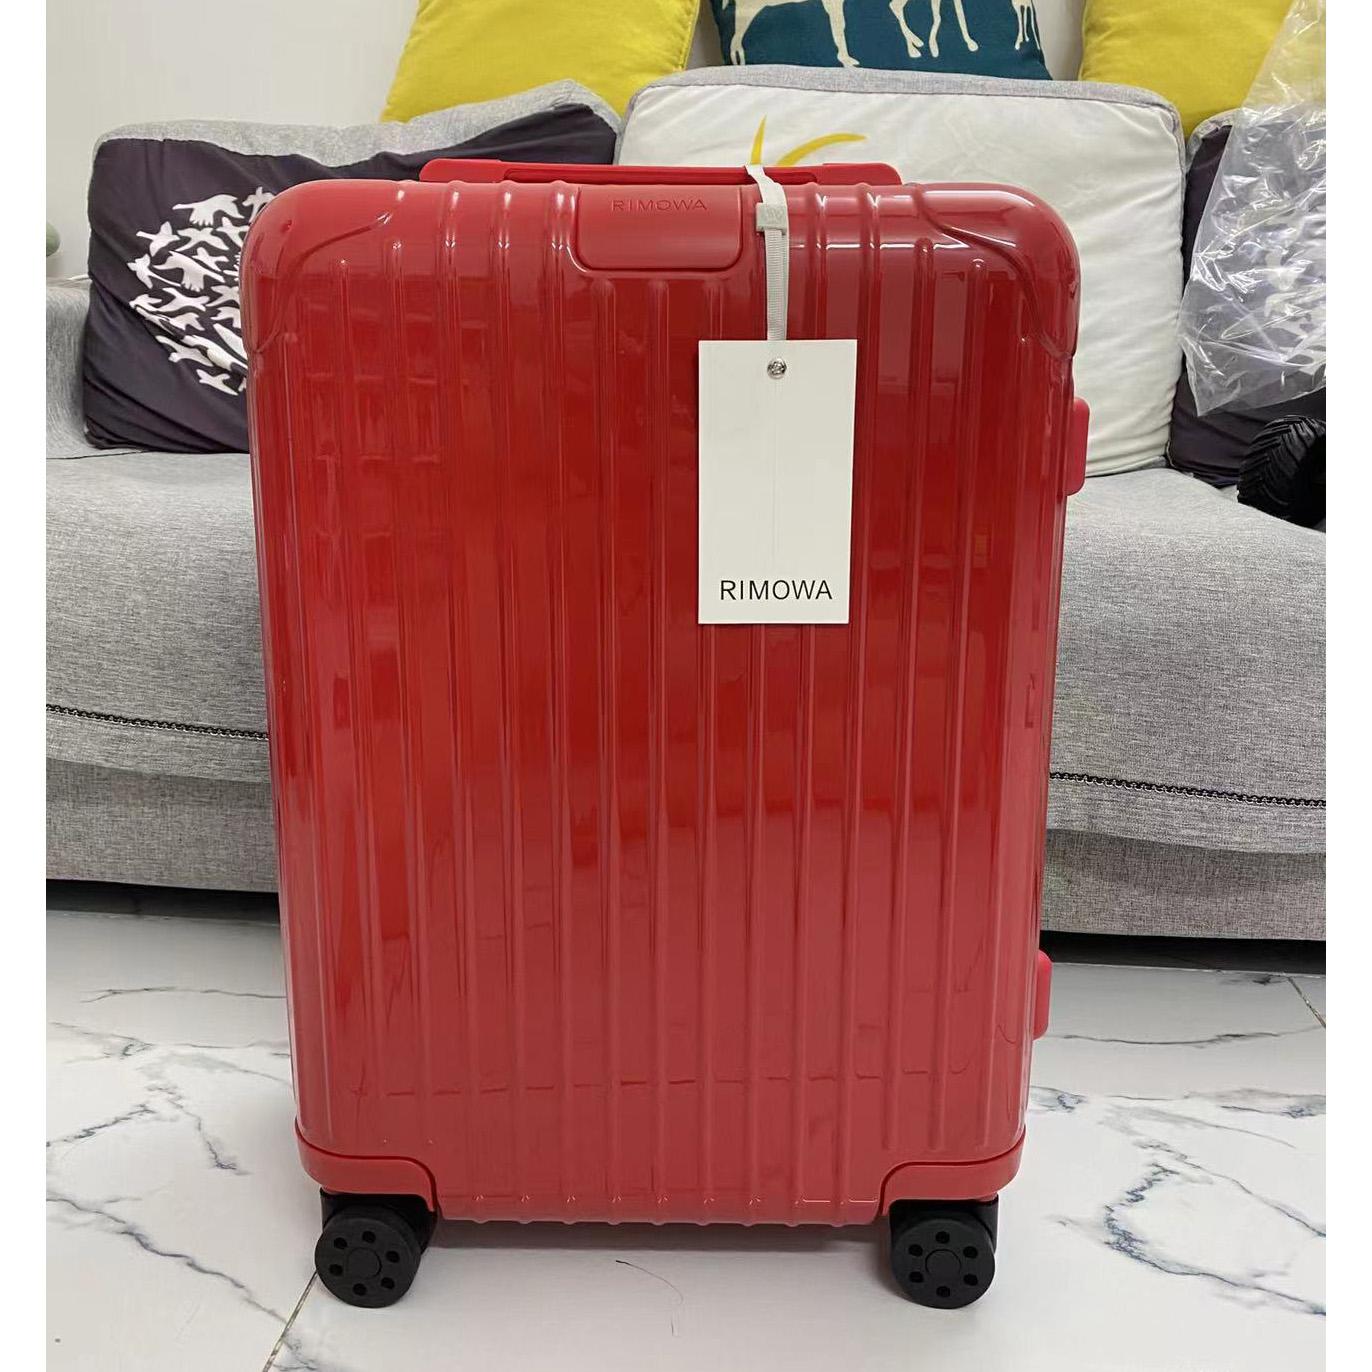 Rimowa Luggage - PerfectKickZ